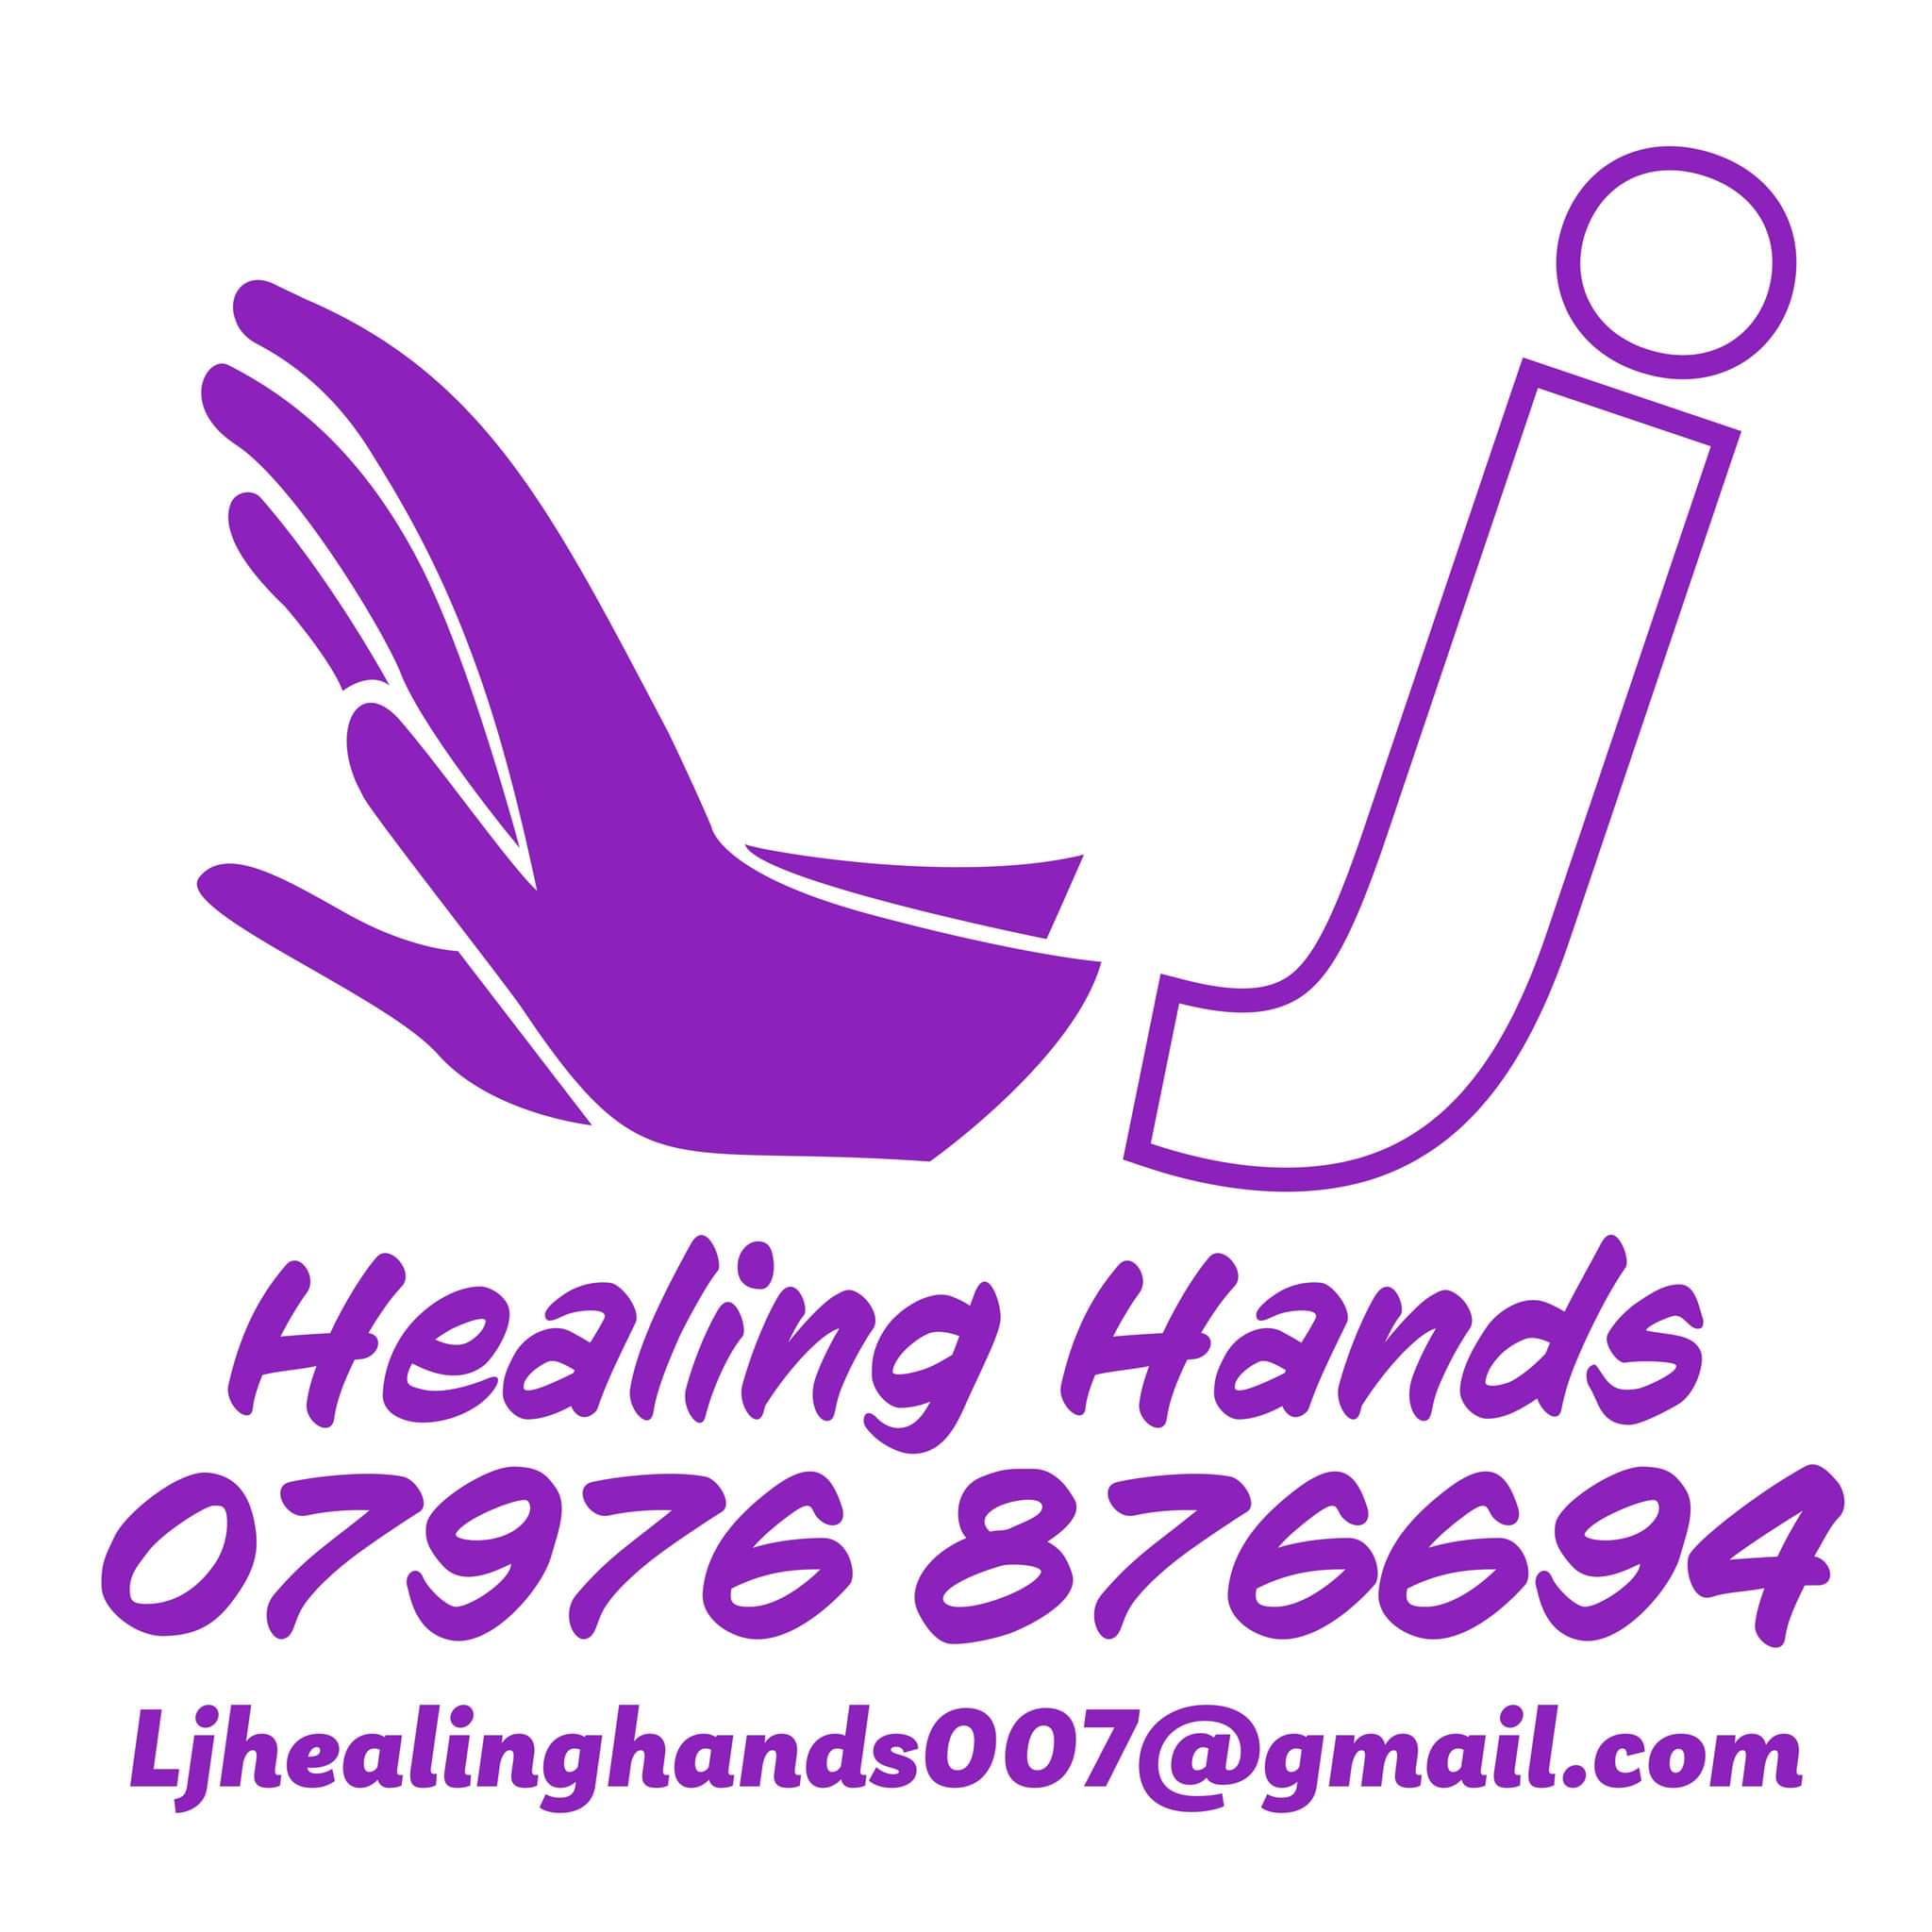 LJ Healing Hands